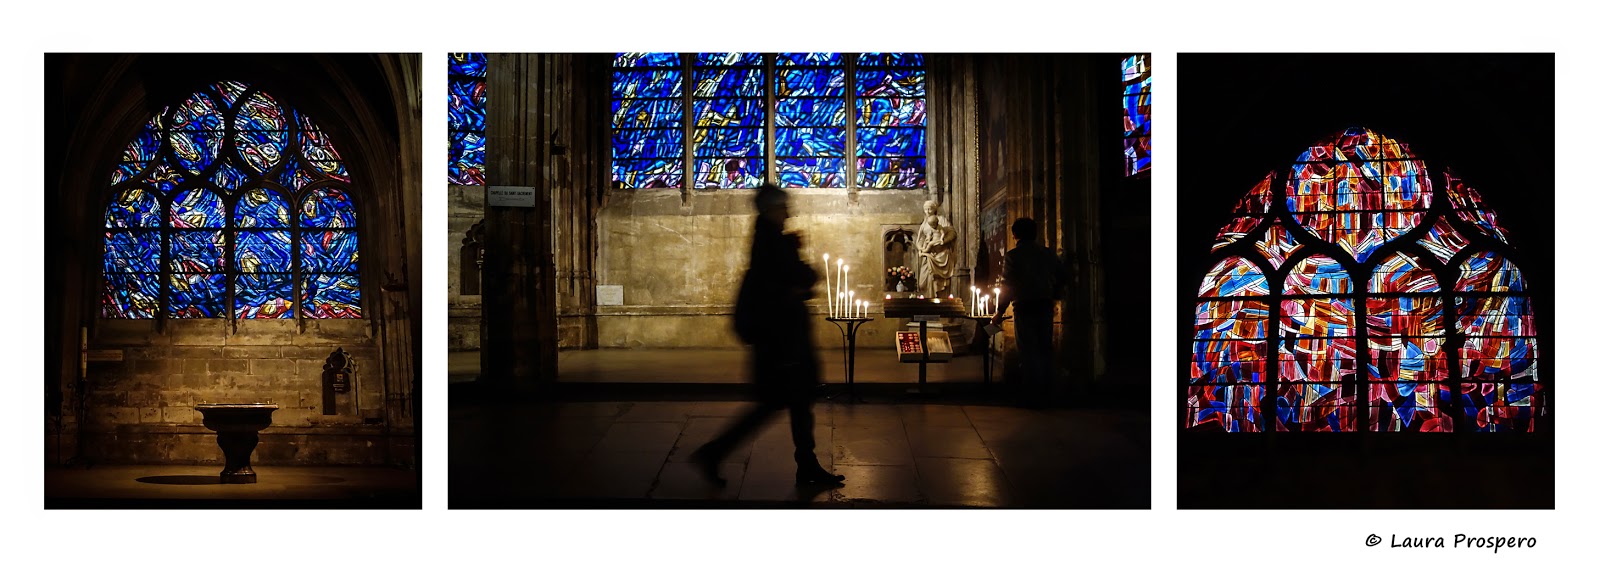 vitraux de jean bazaine - église saint-séverin © Laura Prospero